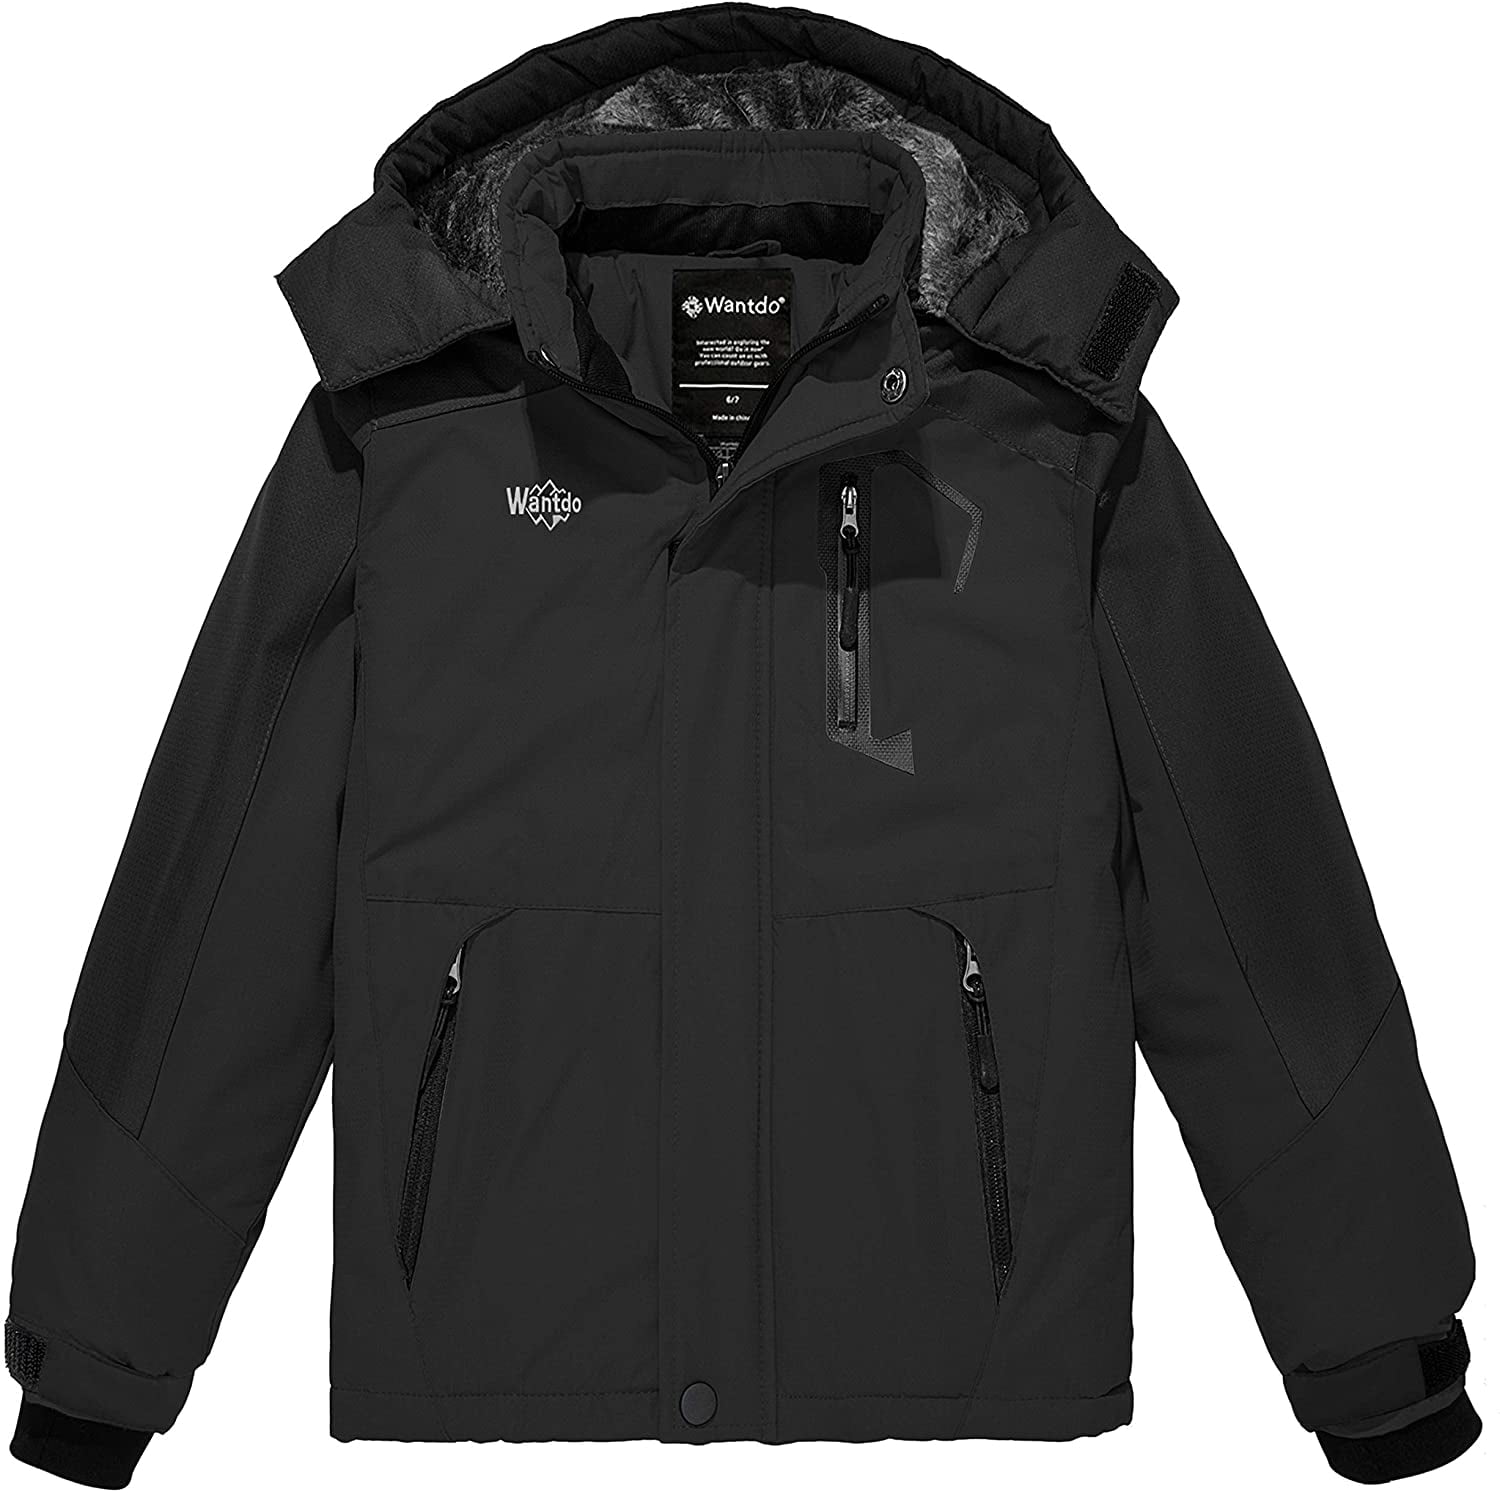 Wantdo Girls Fleece Coat Warm Snow Coat Waterproof Ski Jacket Hooded Windbreaker Snowboarding Coat Kids Winter Jacket 